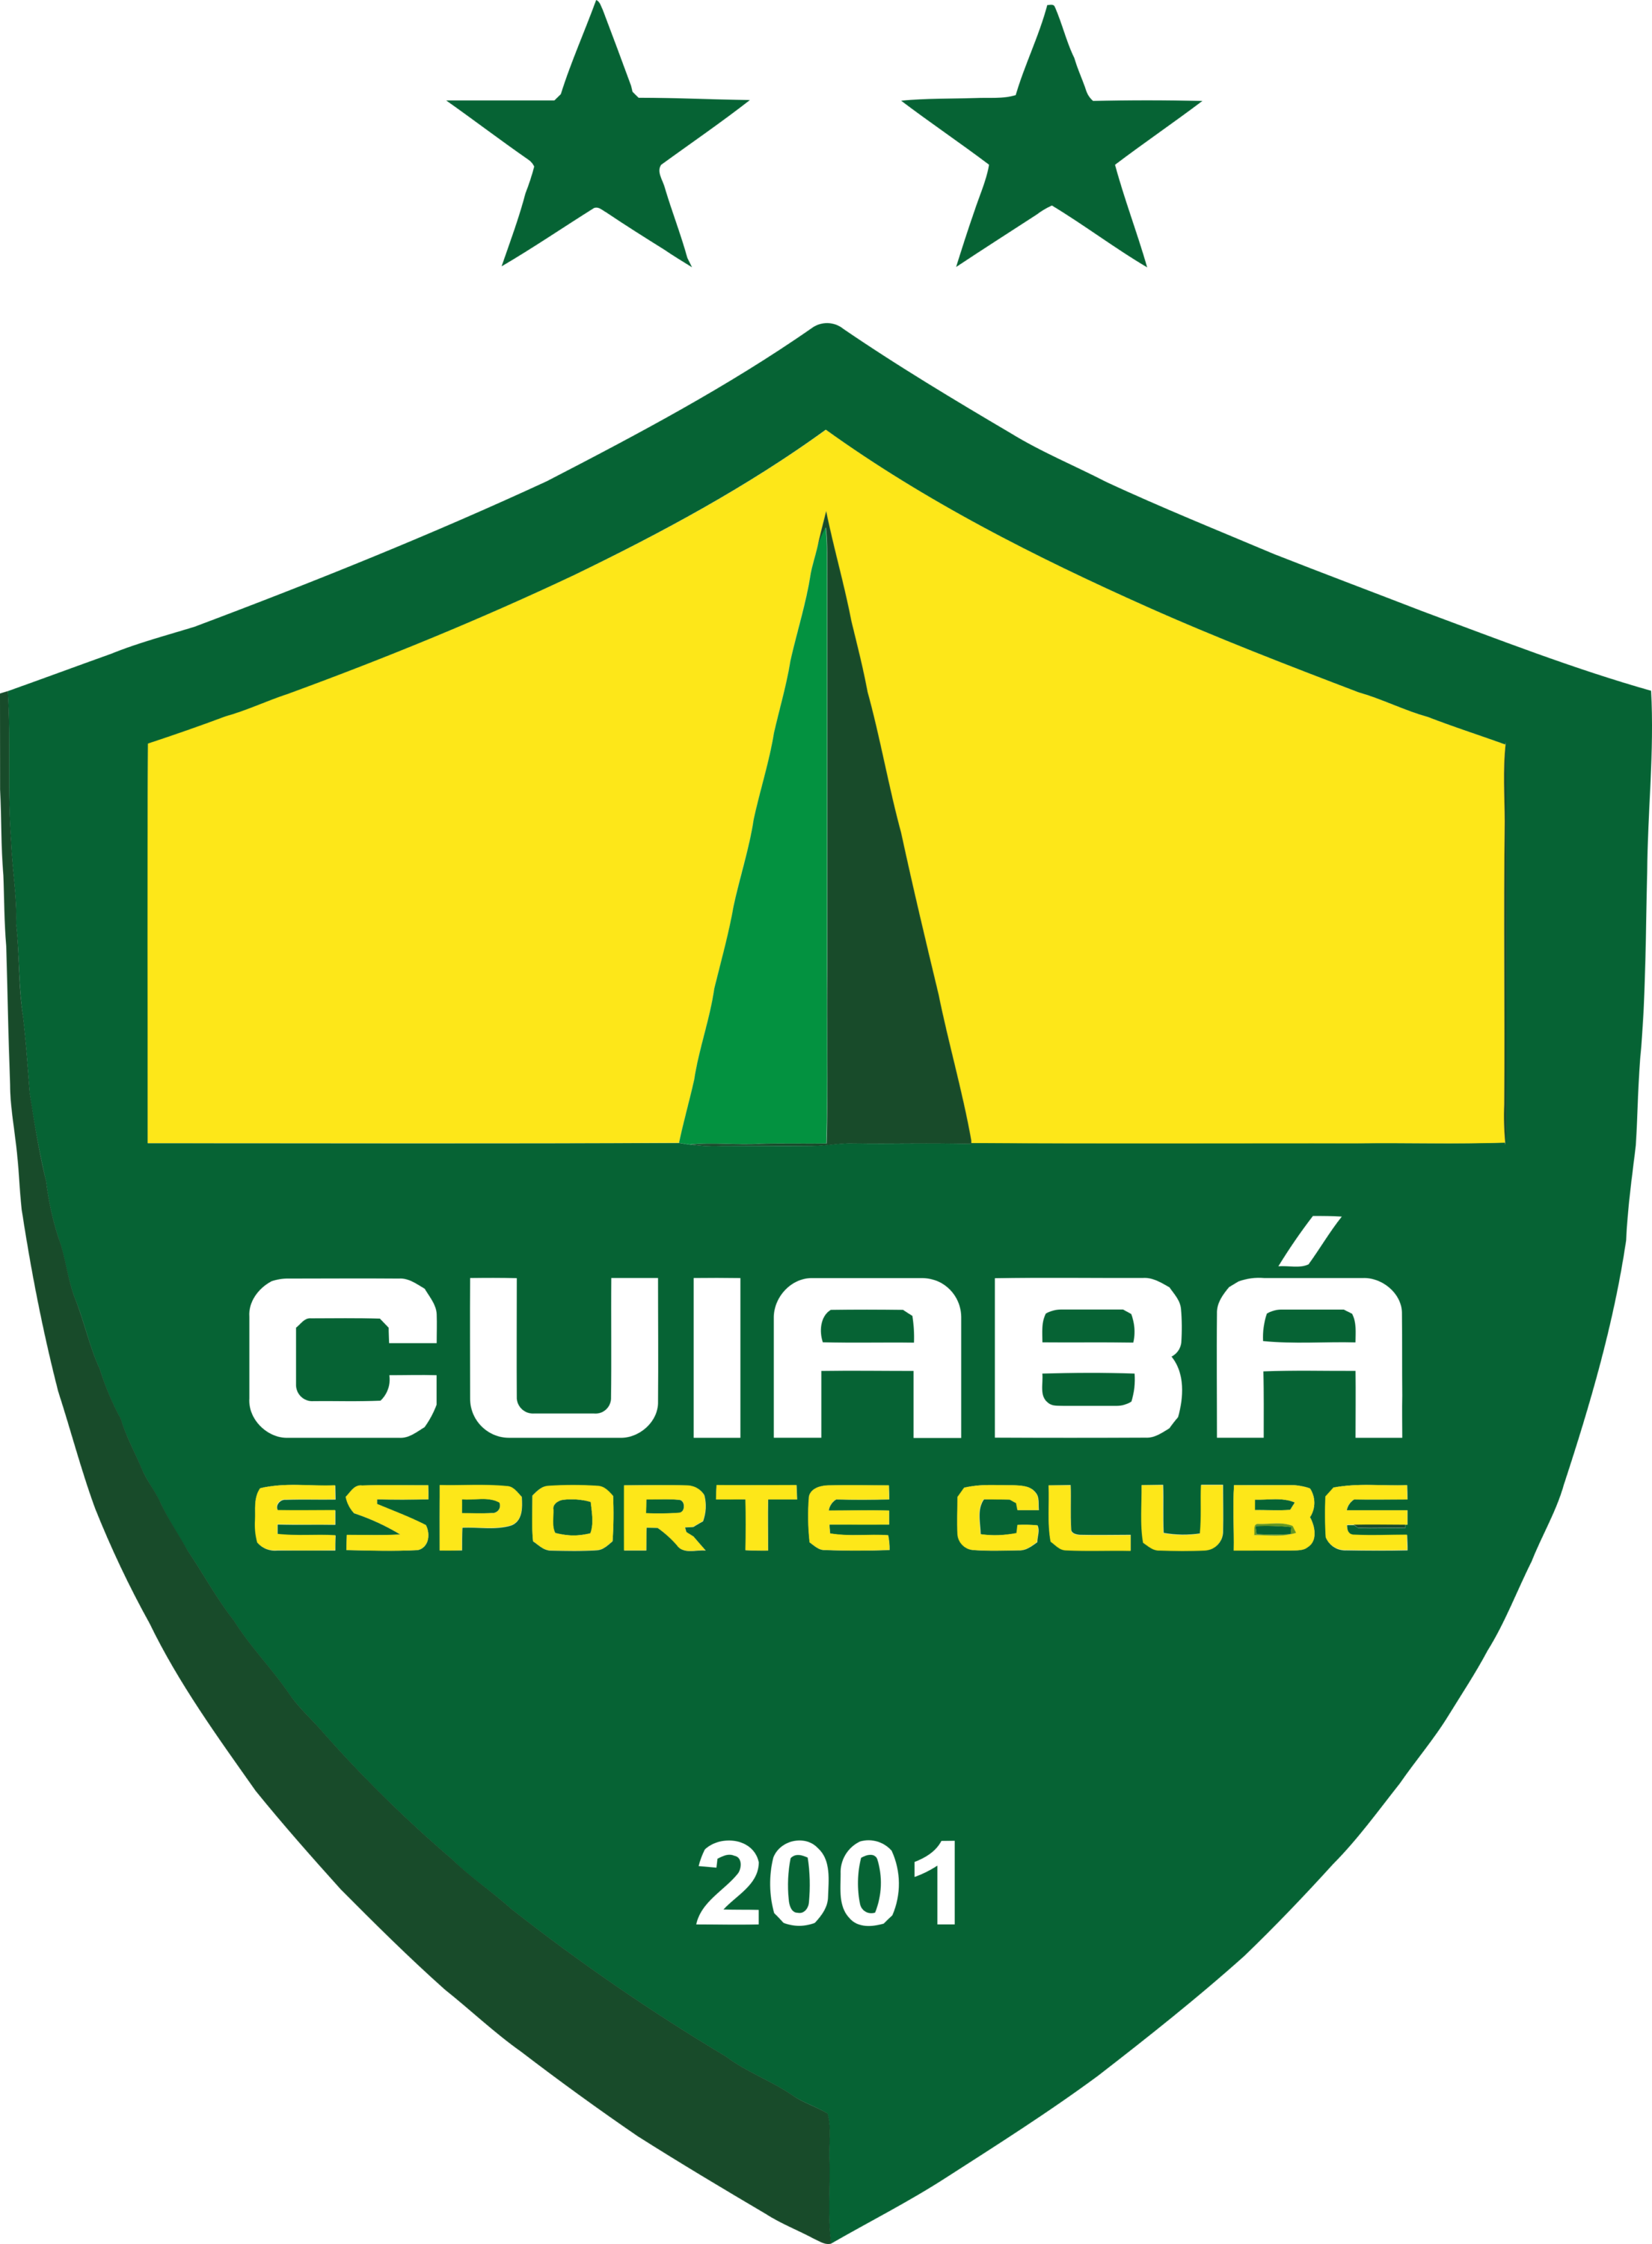 Cuiaba Esporte Clube Logo